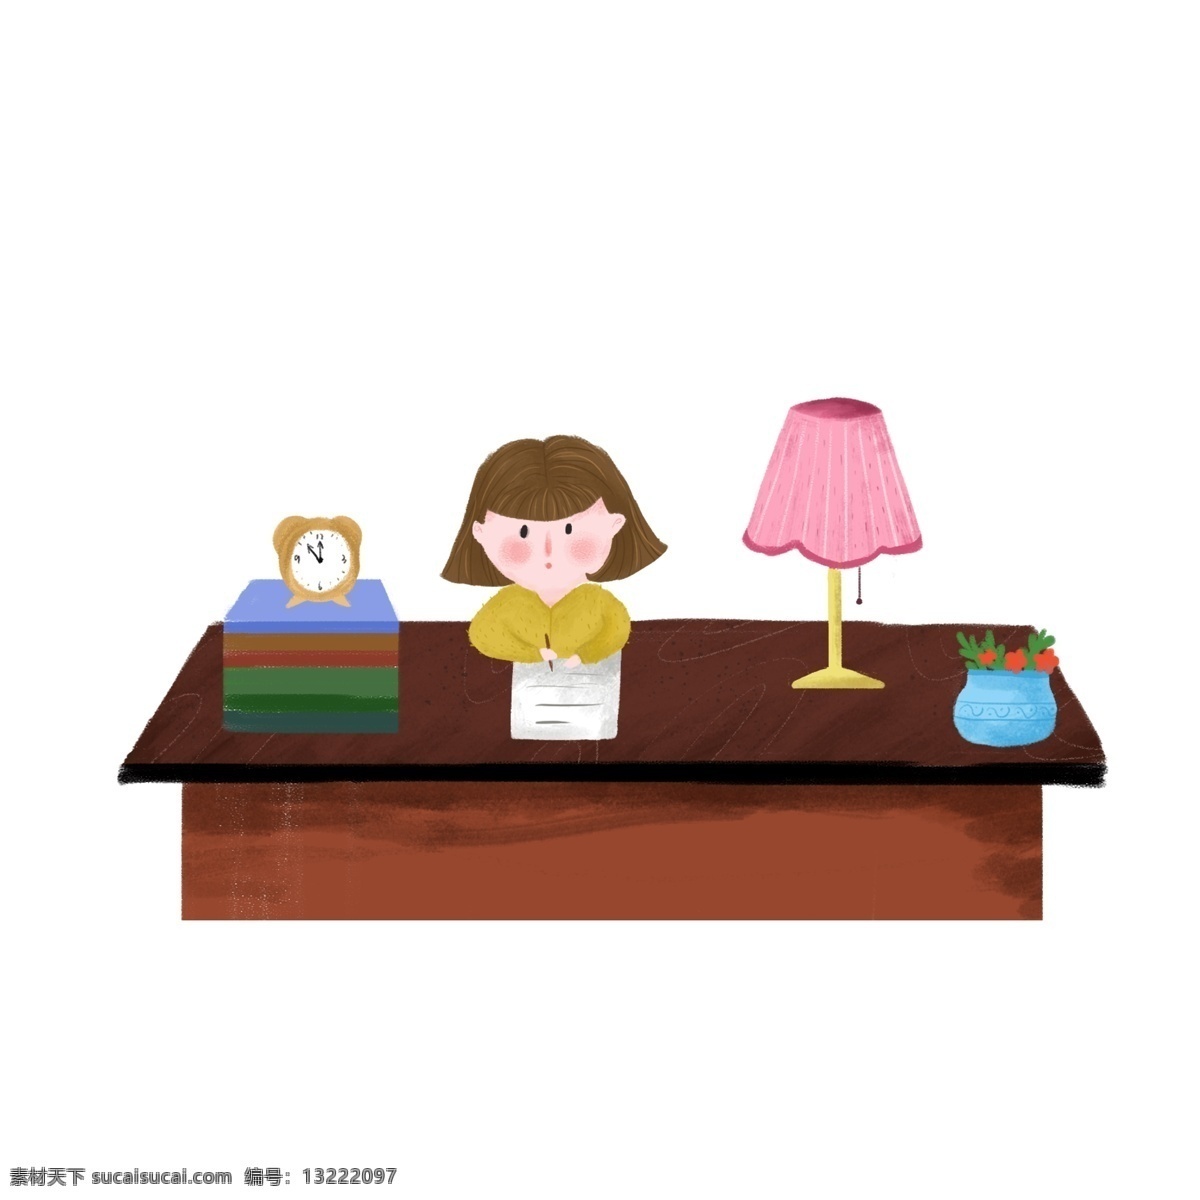 彩绘 写作 业 学生 人物 小女孩 桌子 写作业 台灯 一摞书